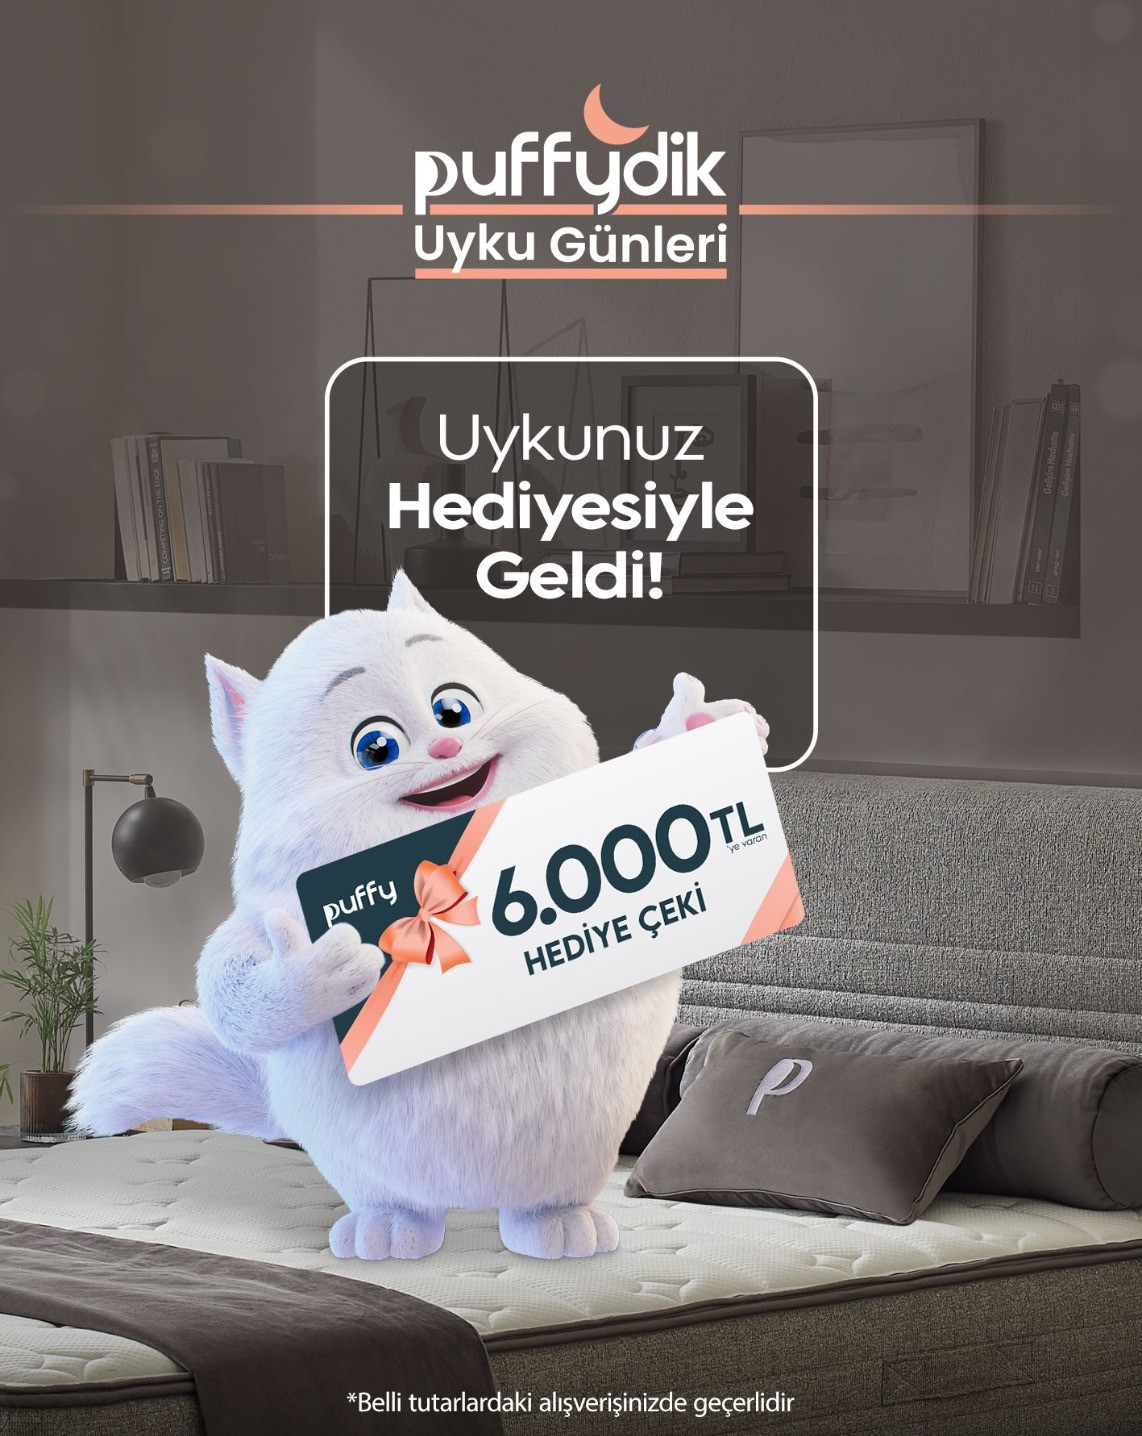 Puffy’dik Uyku Günleri Kampanyası ile 6 Bin TL’ye varan Hediye Çeki Kazanın!